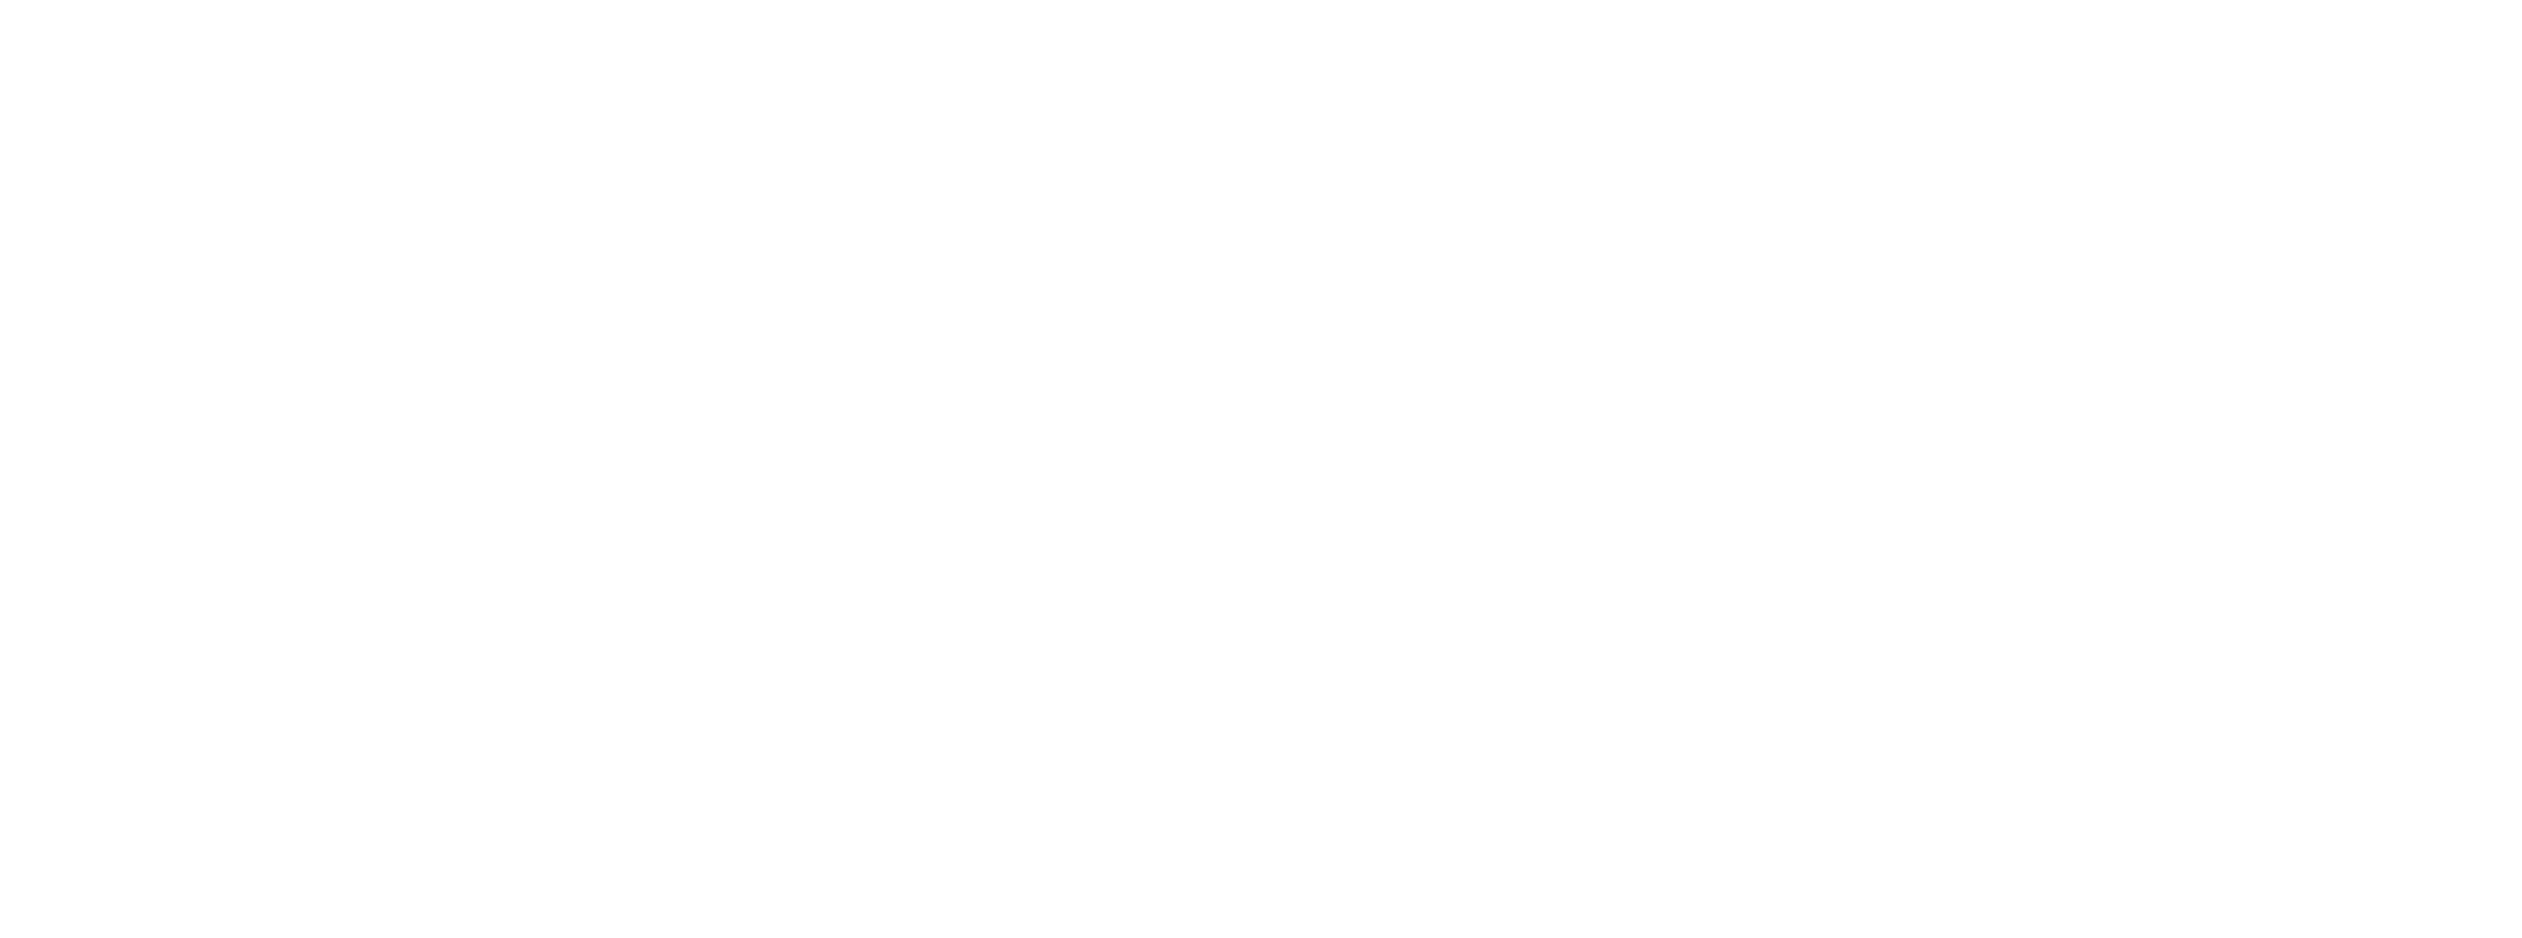 Burucuoğlu Law & Consultancy İzmir Lawyer